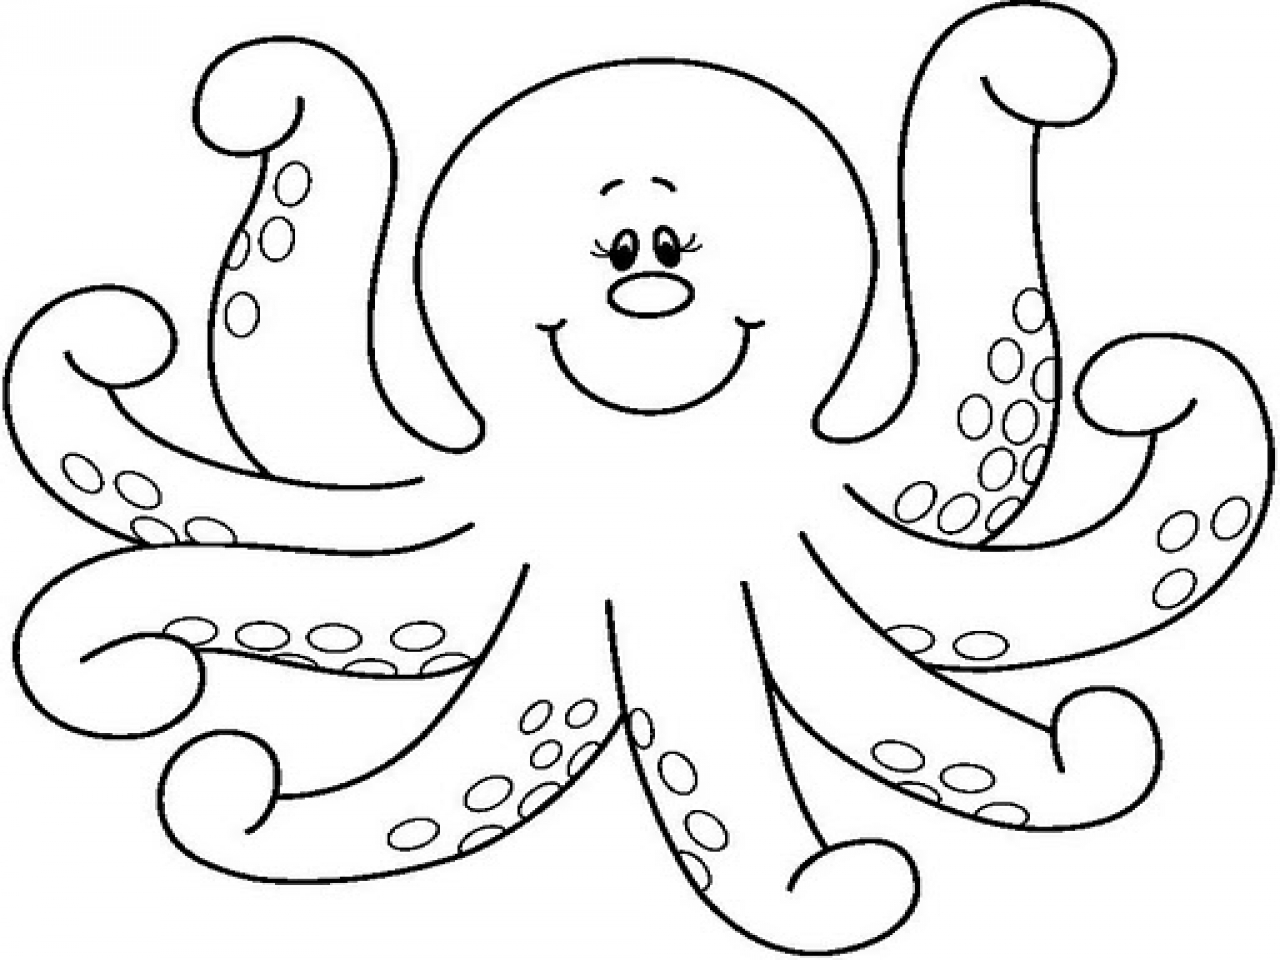 Octopus clip art.